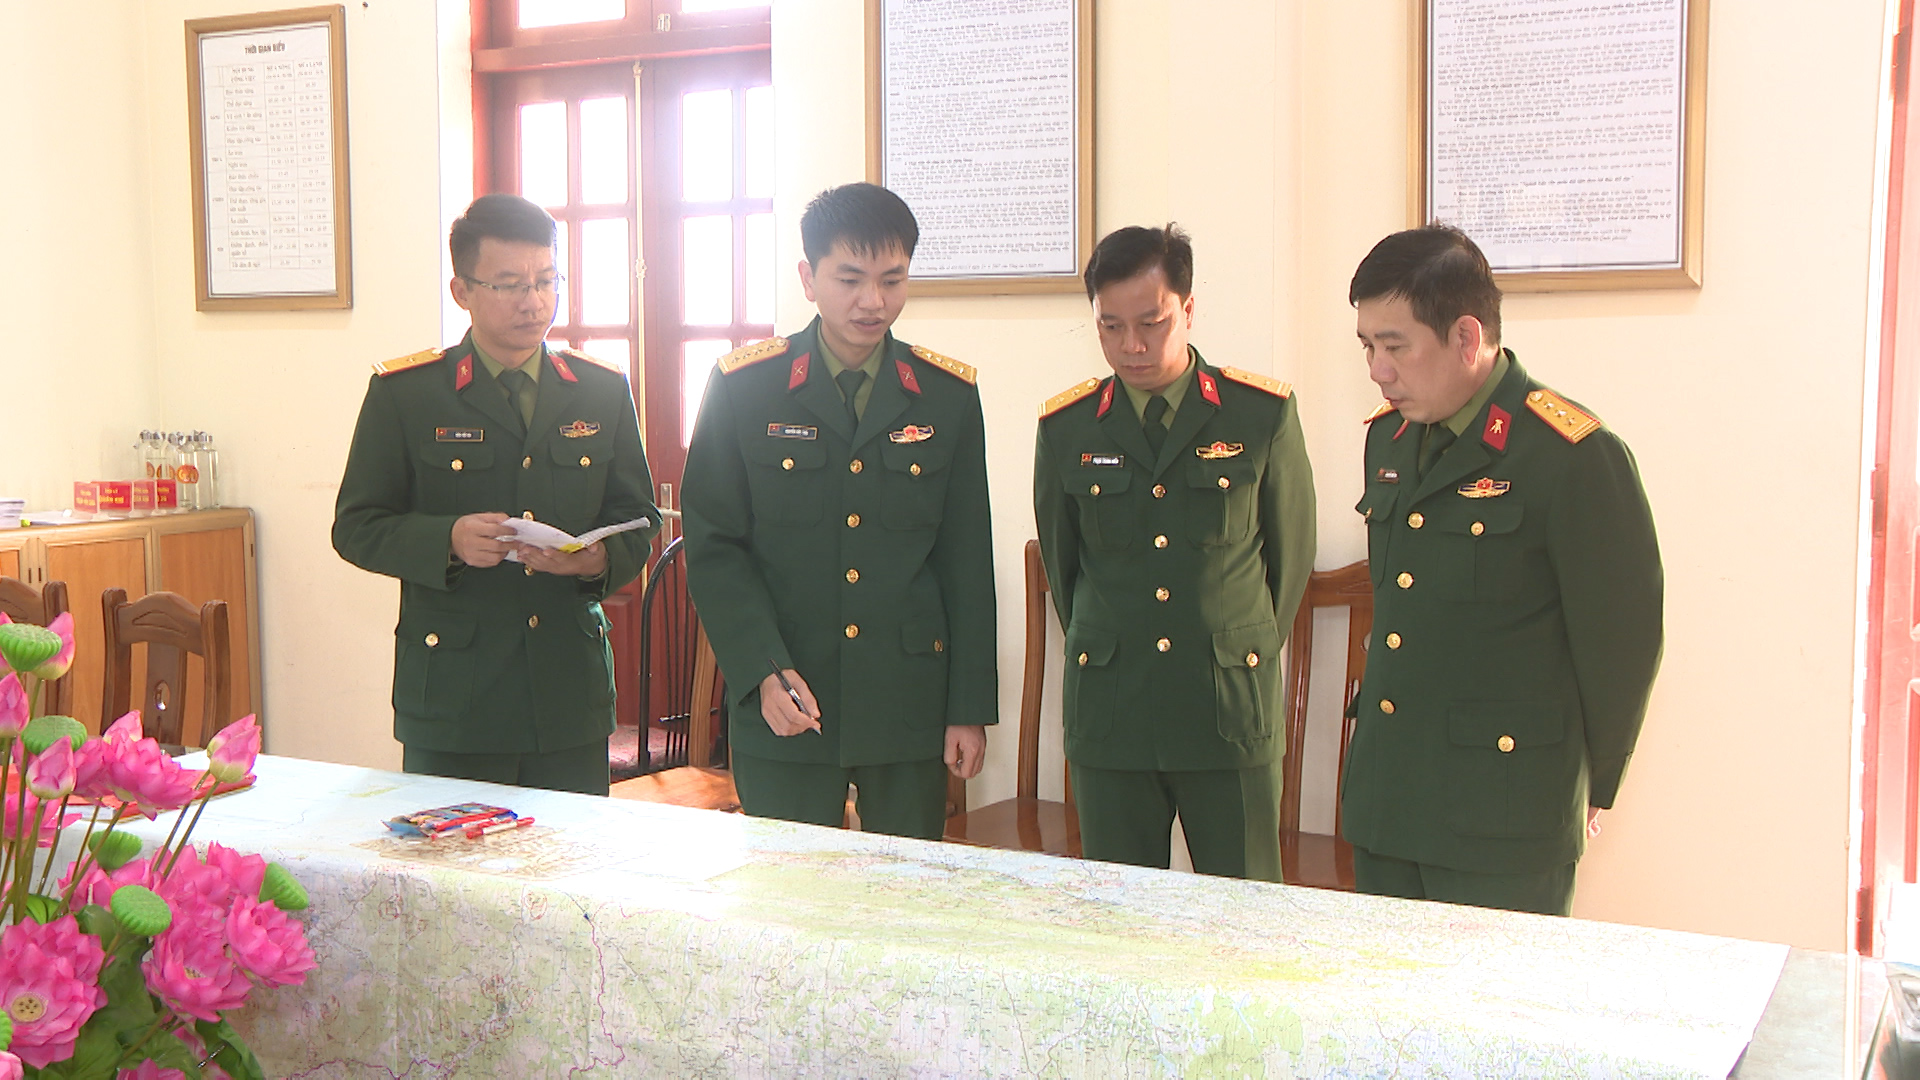 Đại úy Nguyễn Đức Thái về nhận nhiệm vụ Trợ lý tham mưu kế hoạch, phòng Kỹ thuật, Bộ chỉ quân sự (BCHQS) tỉnh Quảng Ninh